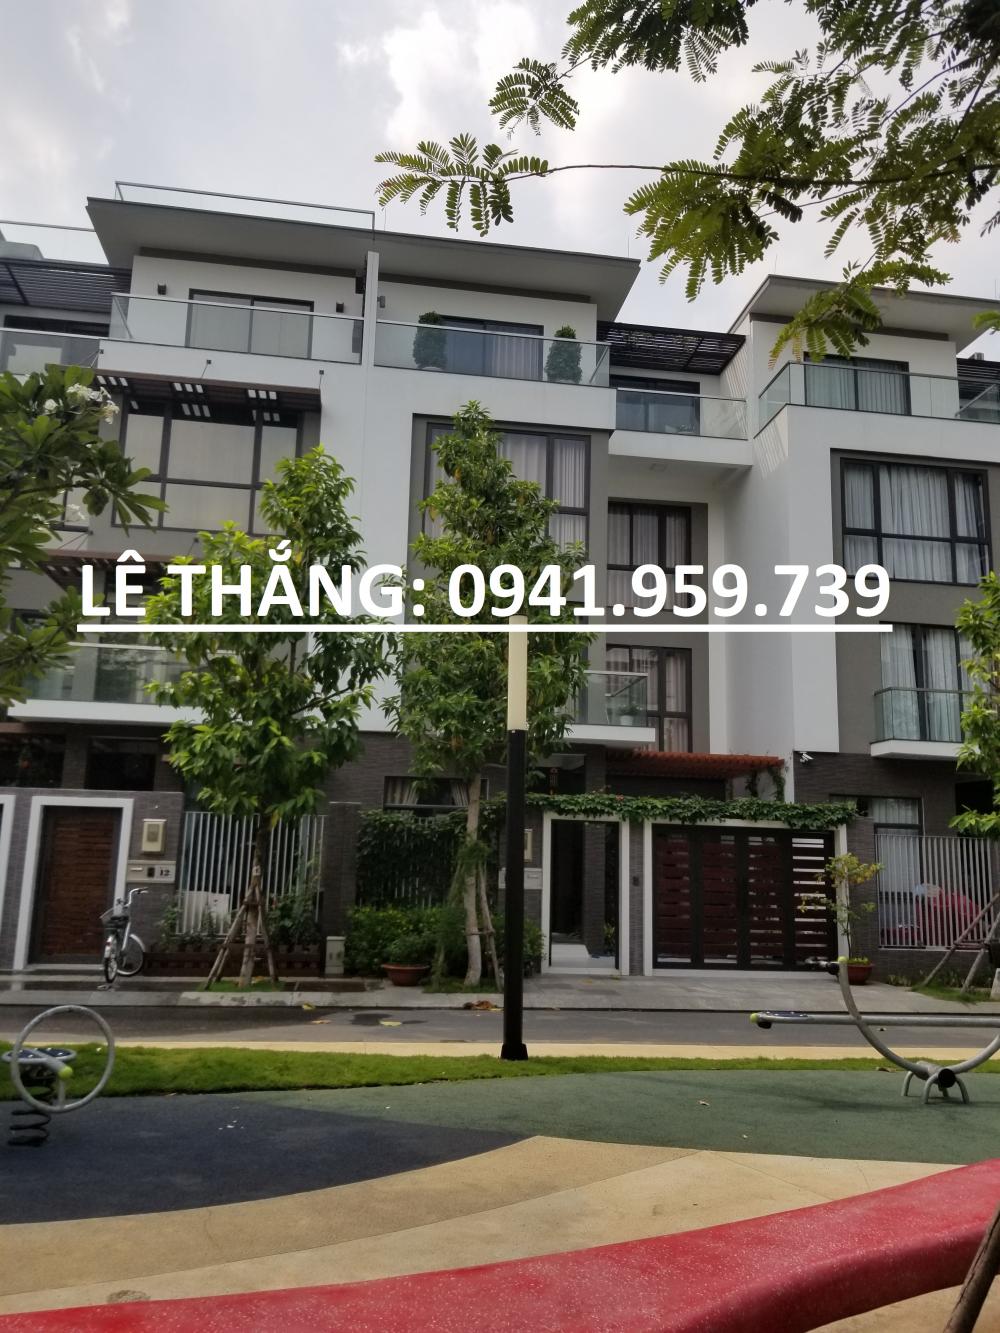 Xuất cảnh nên bán nhà đường Hoàng Việt, P4, Tân Bình, 8x20m, 2 lầu, giá rẻ nhất